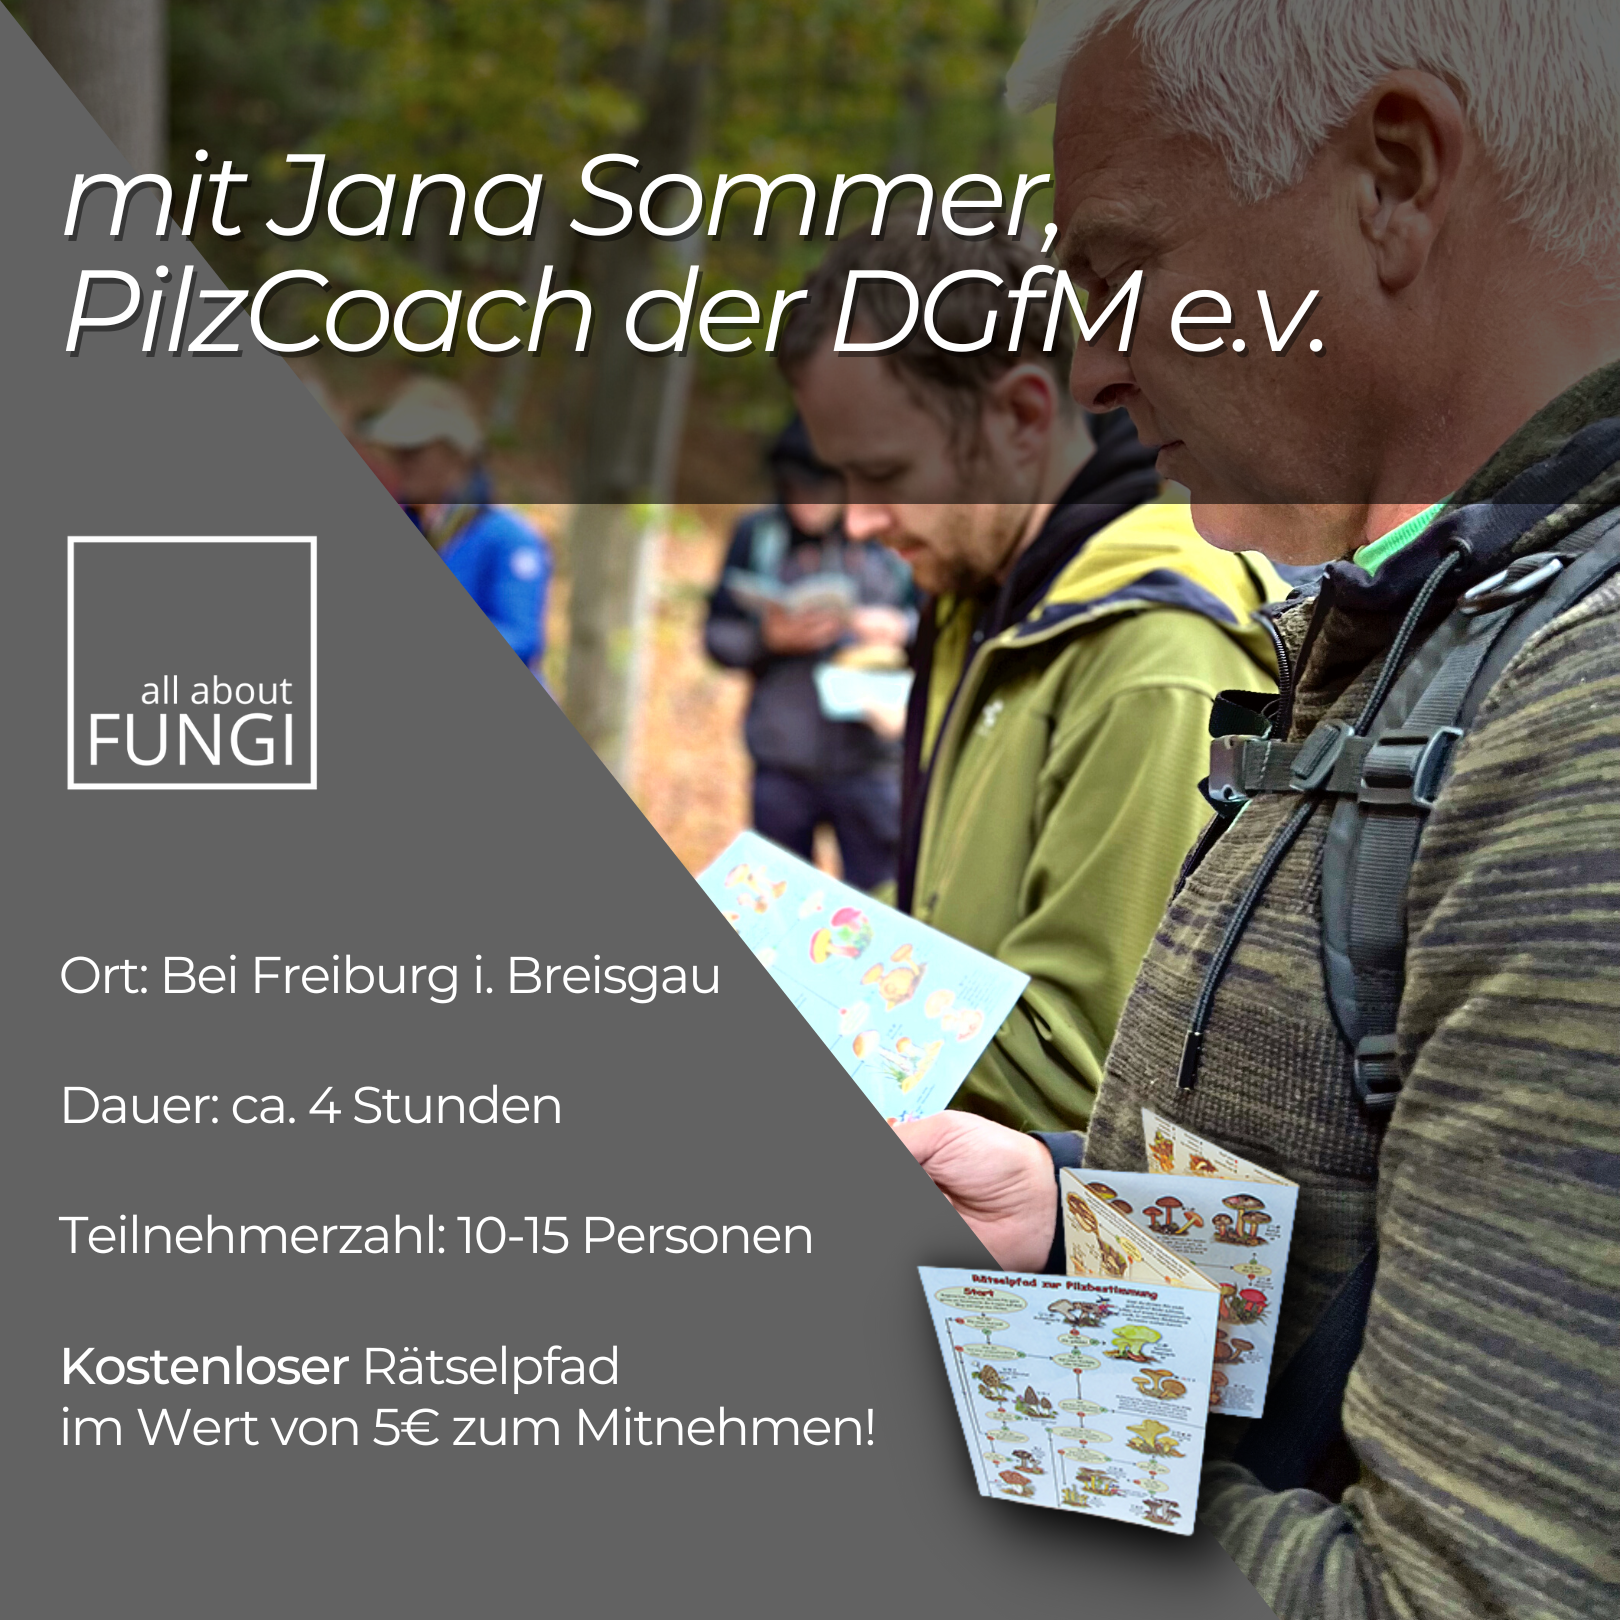 Pilzexkursion bei Freiburg in Breisgau in Baden-Württemberg mit Jana Sommer